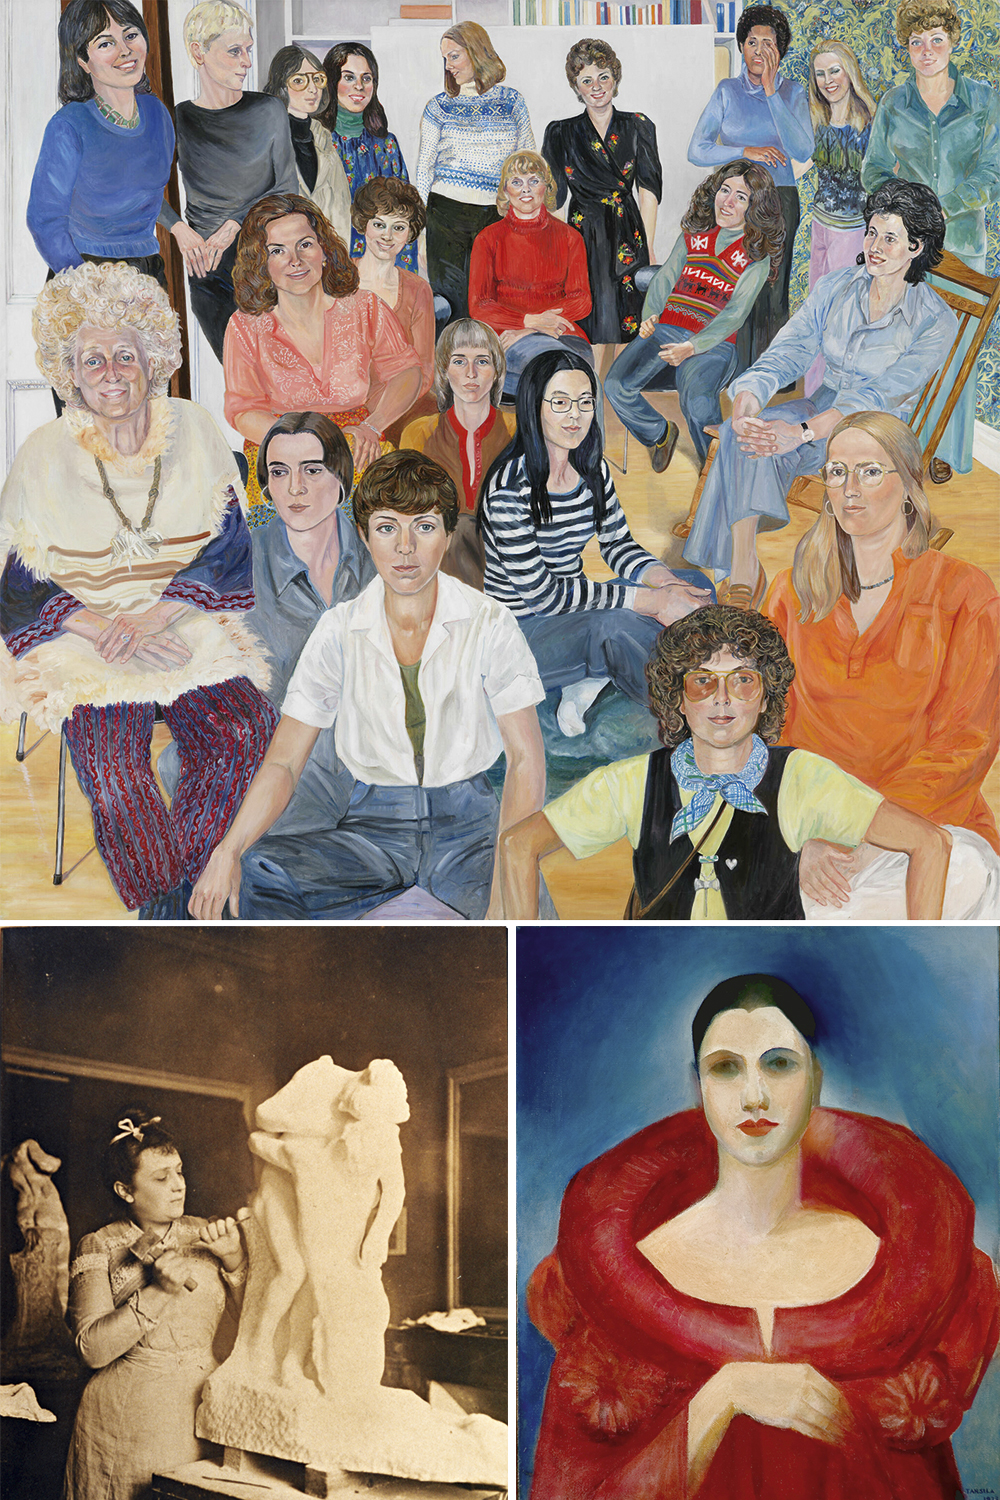 FASES - Mulheres que brilharam na arte: acima, A.I.R. Group Portrait, de Sylvia Sleigh; na esquerda, a escultora Camille Claudel; e o autorretrato de Tarsila